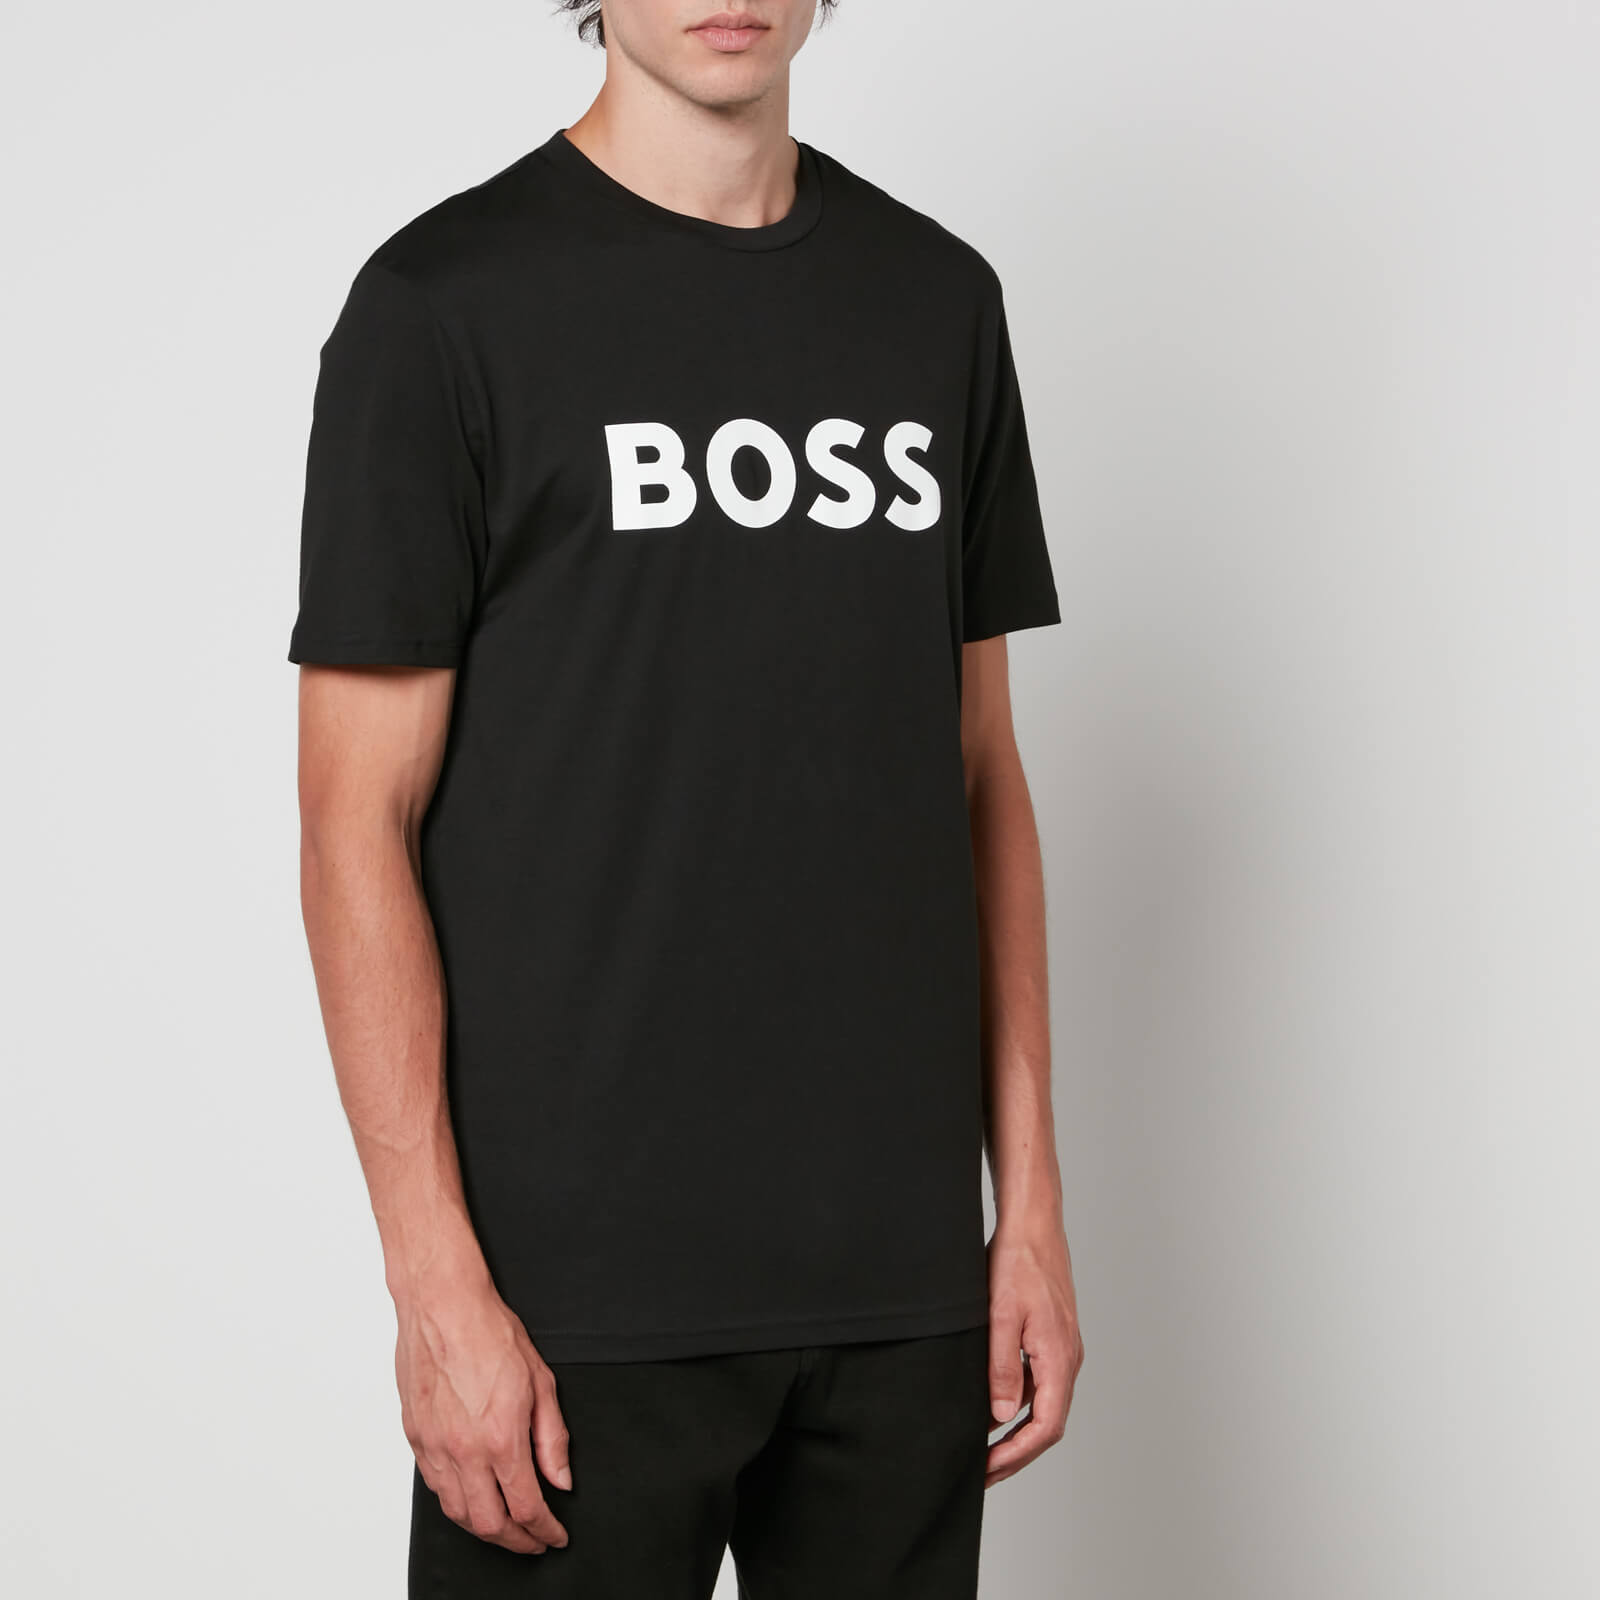 BOSS Orange Thinking 1 Cotton-Jersey T-Shirt - M von Boss Orange